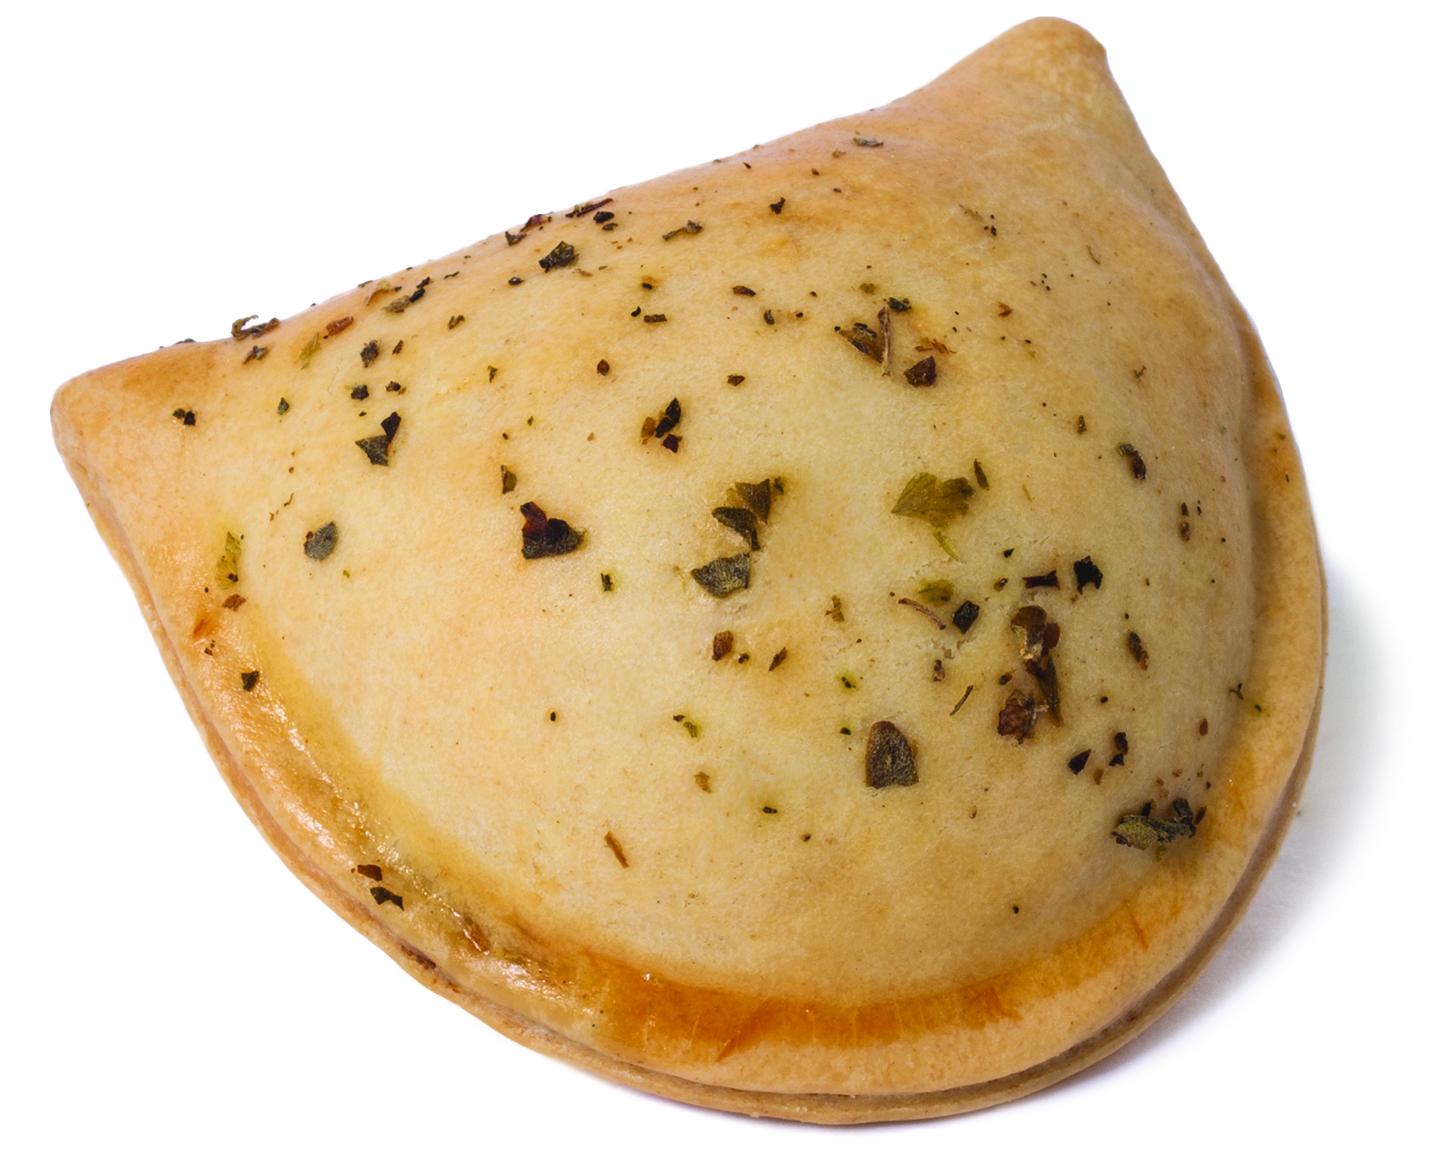 Coquetel - Assados Coquetel (Assados) - Pastelzinho de Nata com Carne